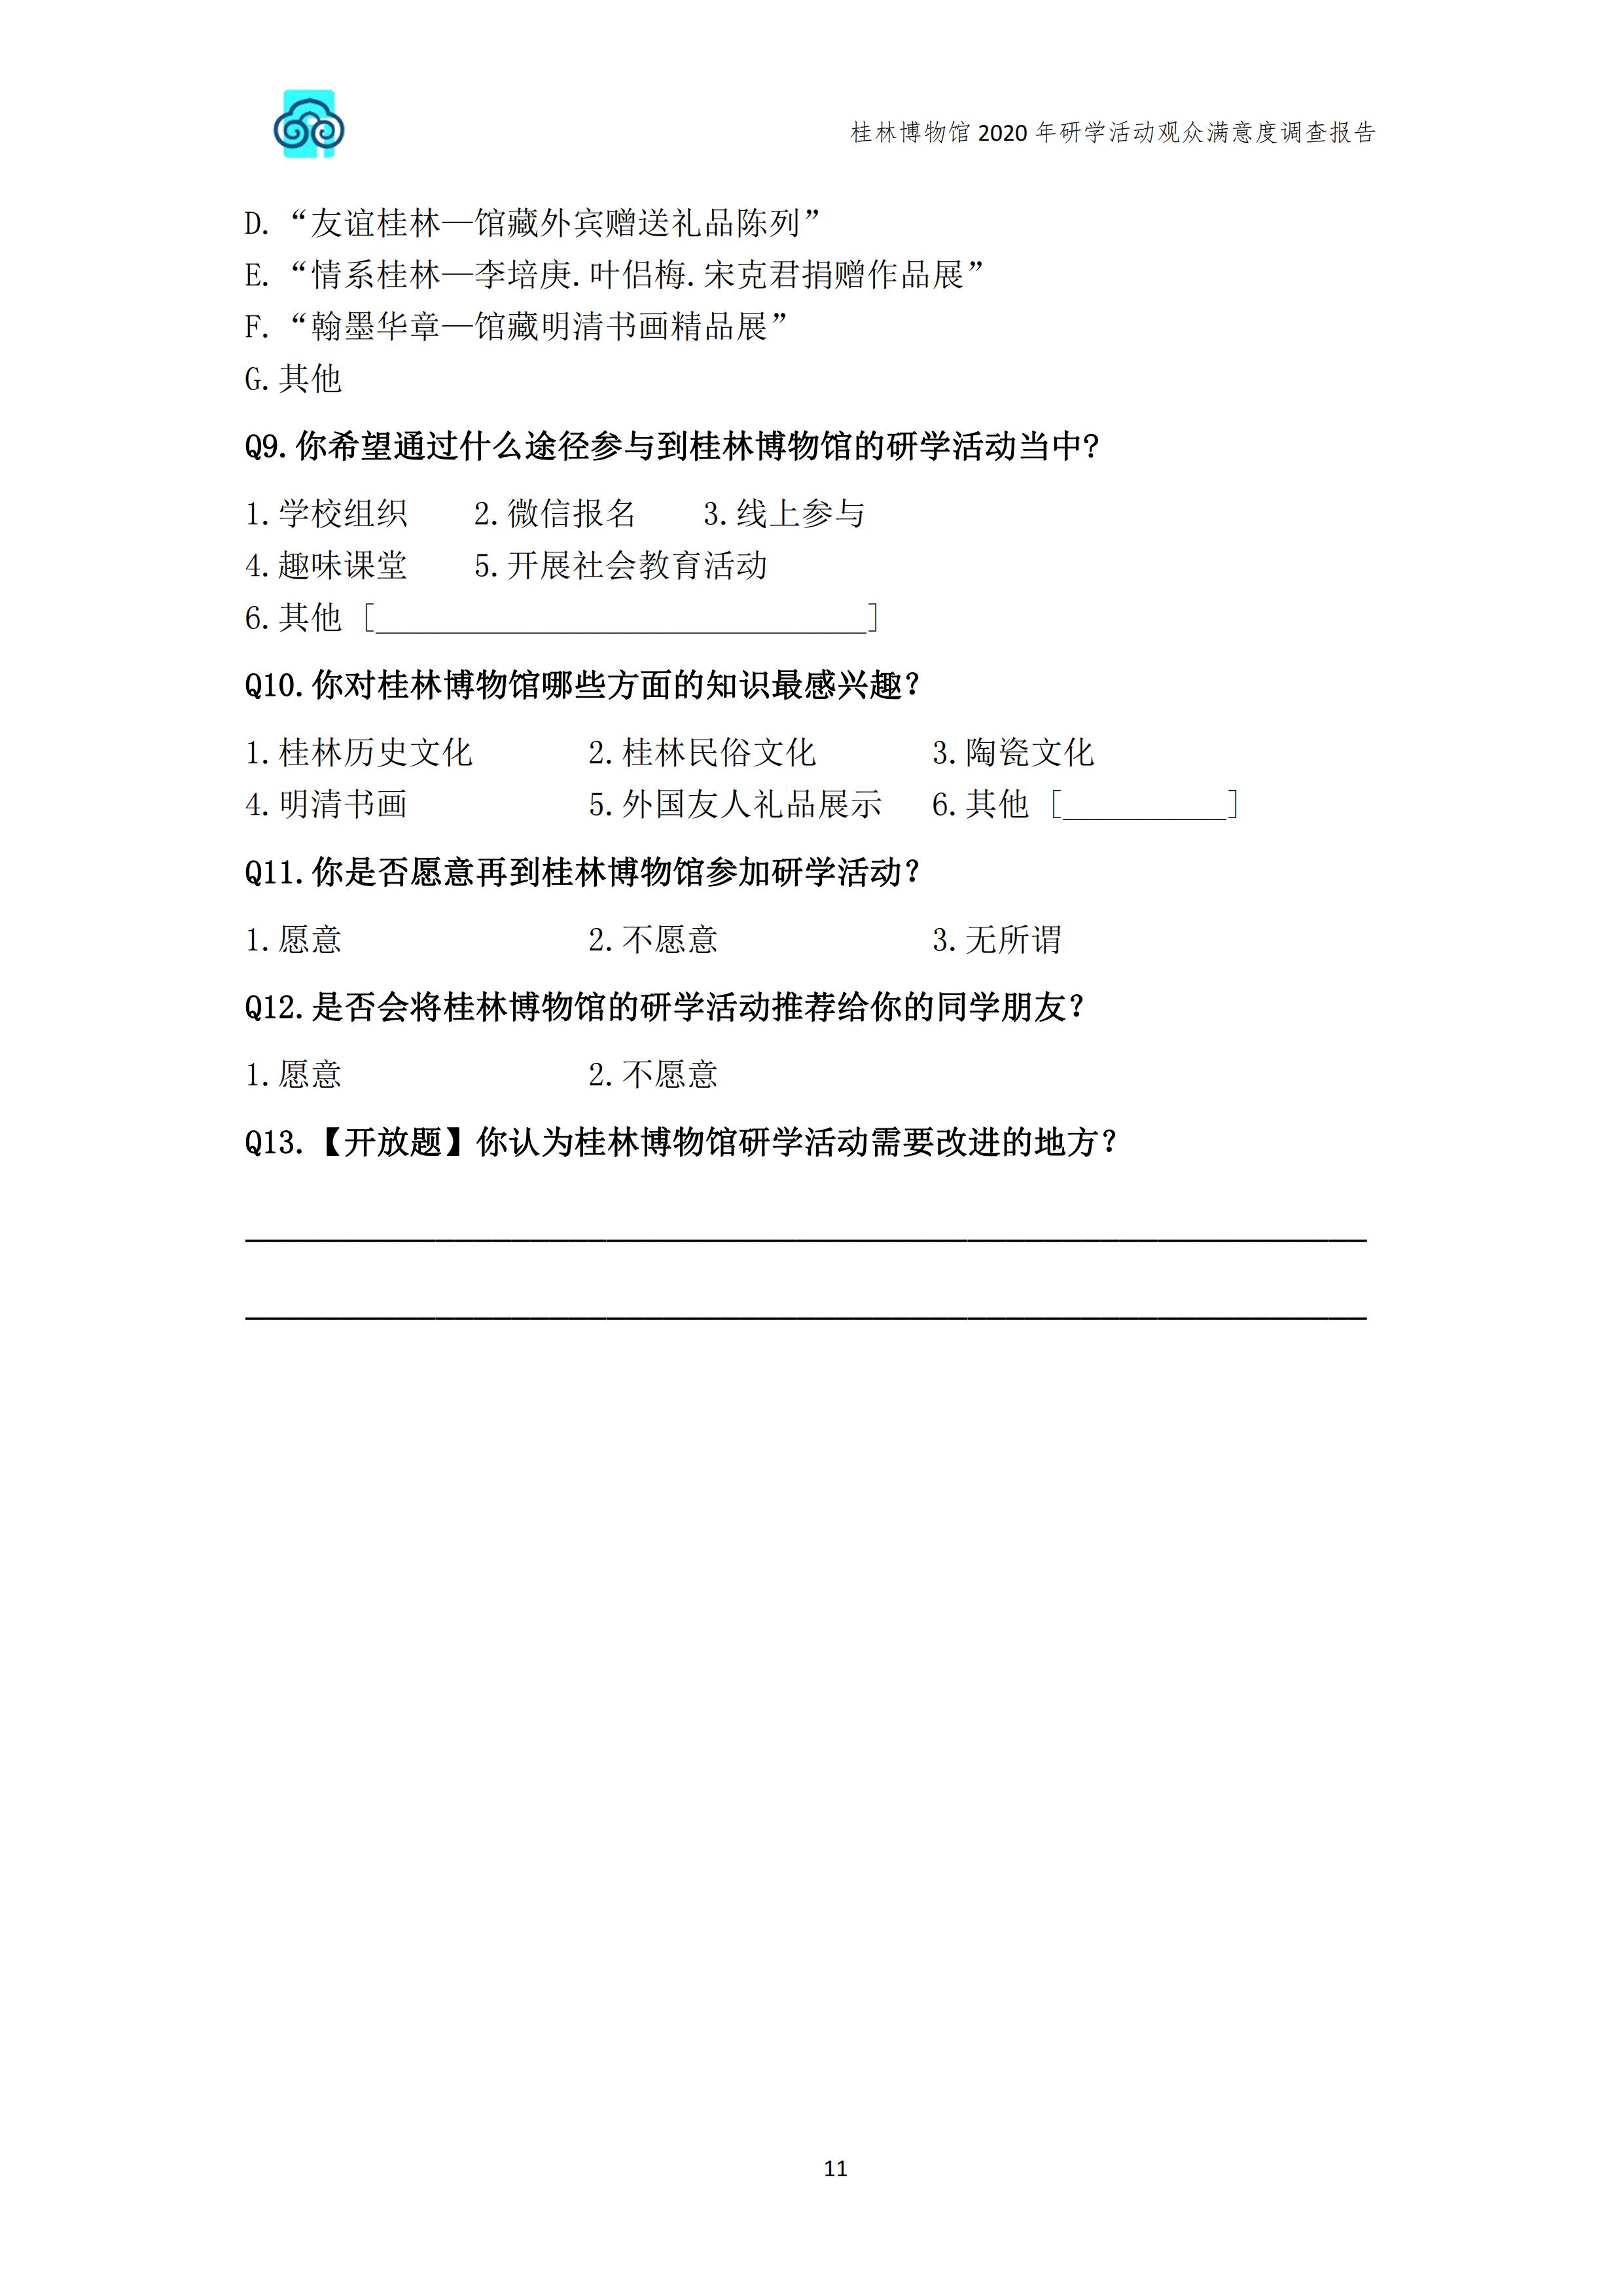 桂林博物馆2020年研学活动观众满意度调查报告_v3_12.jpg